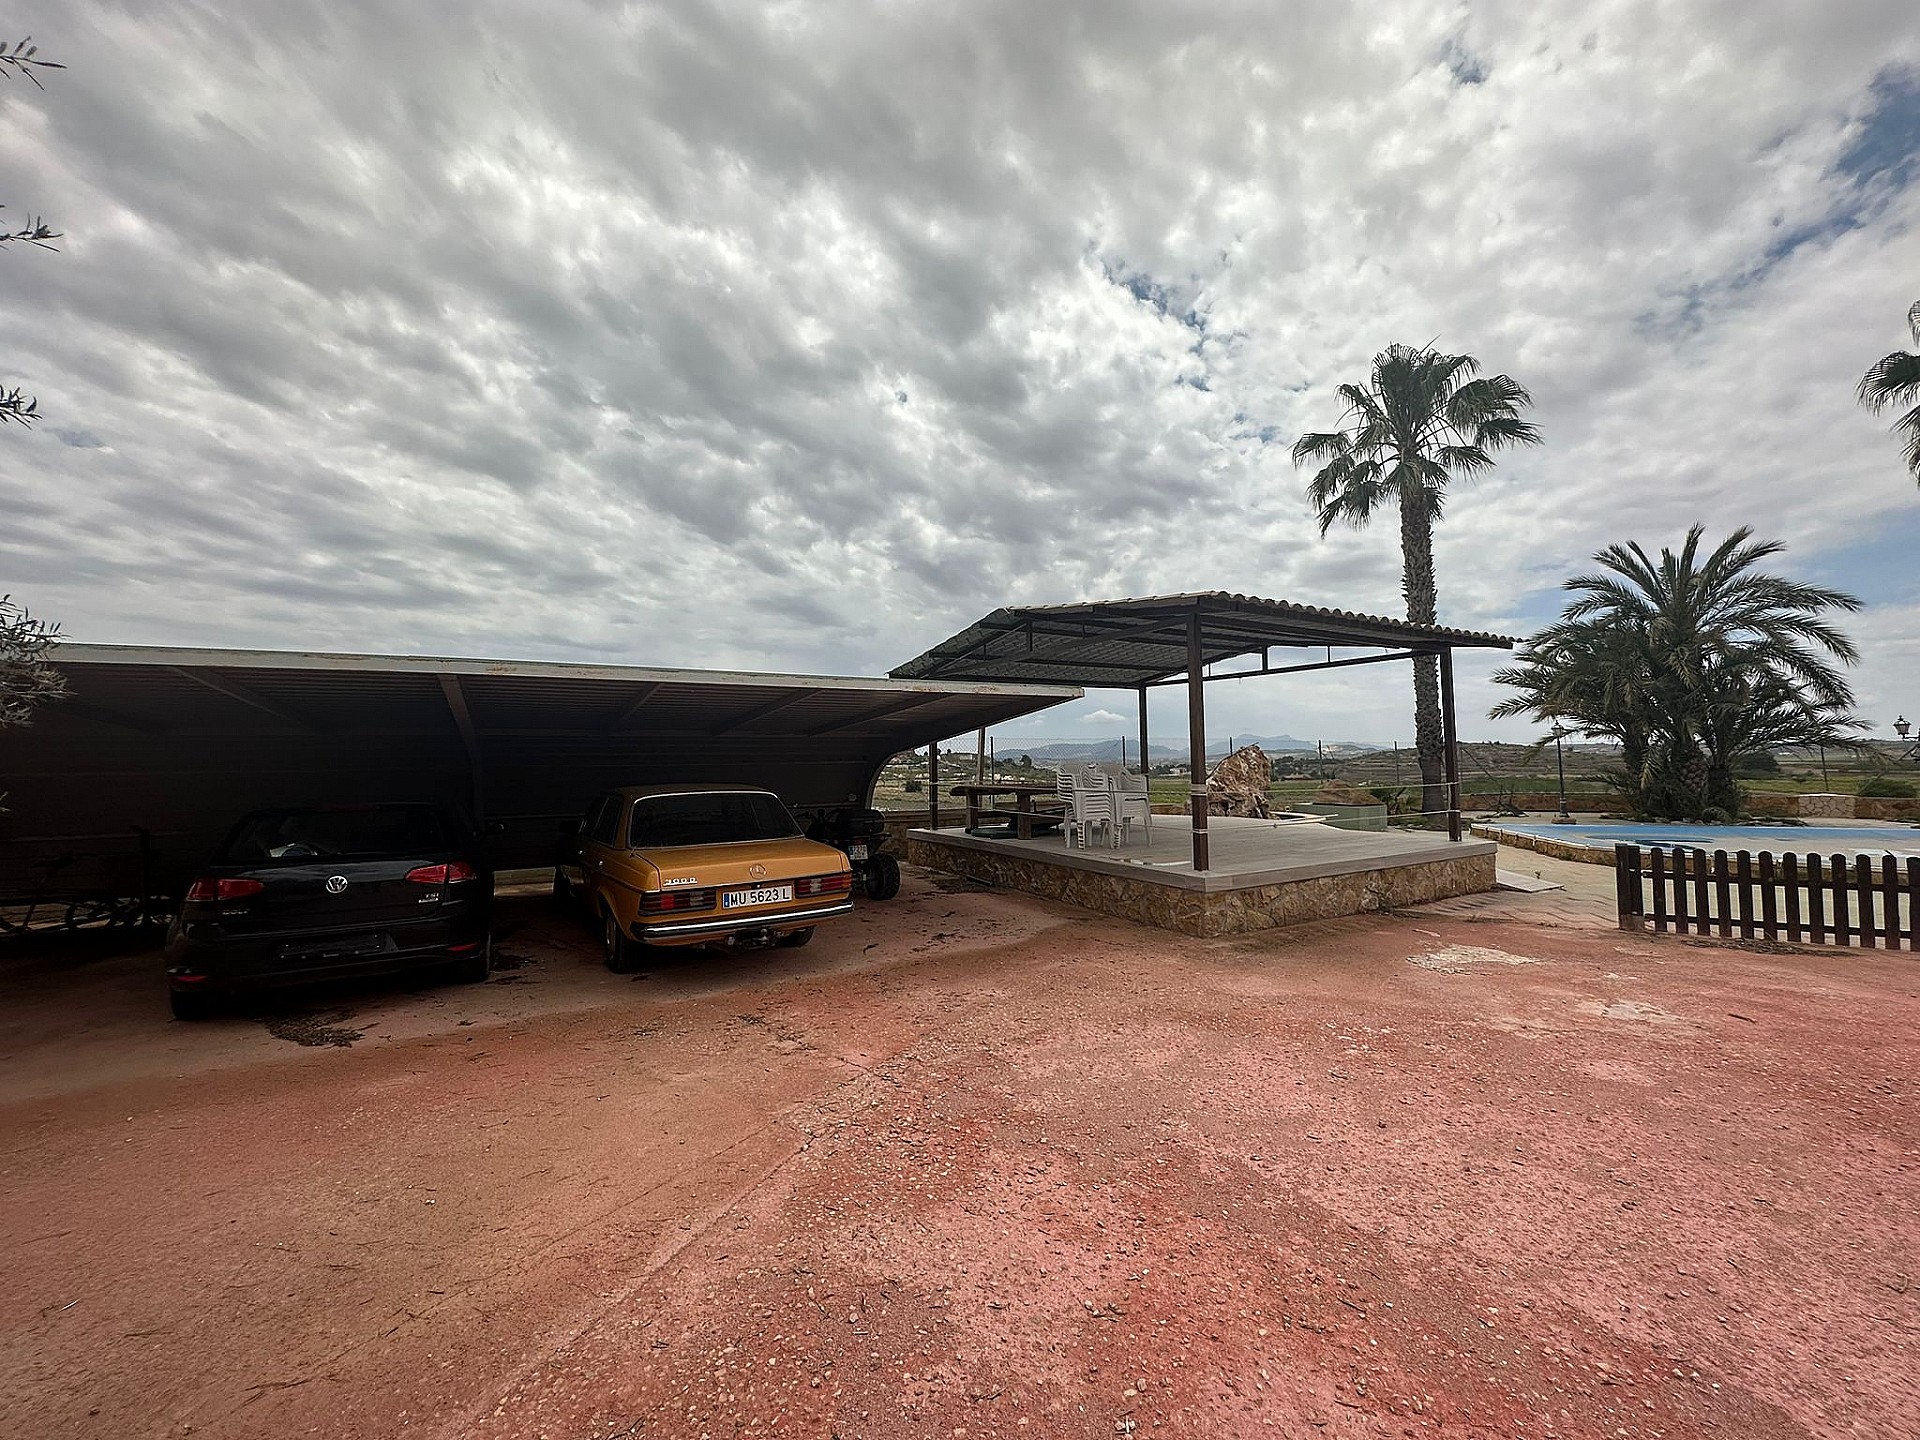 Villa for sale in Alicante 17